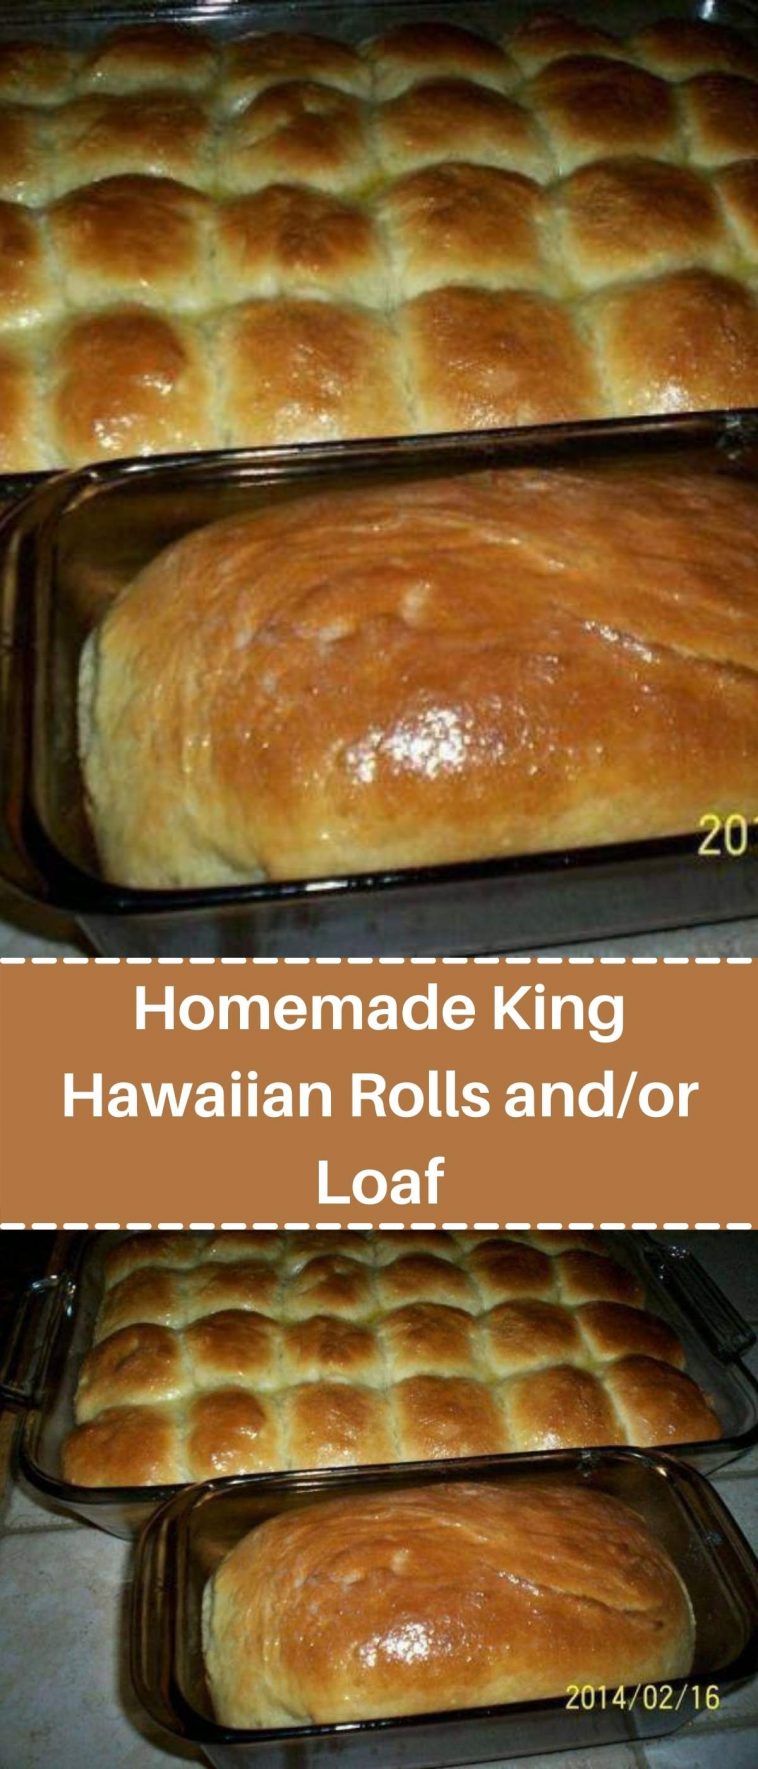 Homemade King Hawaiian Rolls and/or Loaf